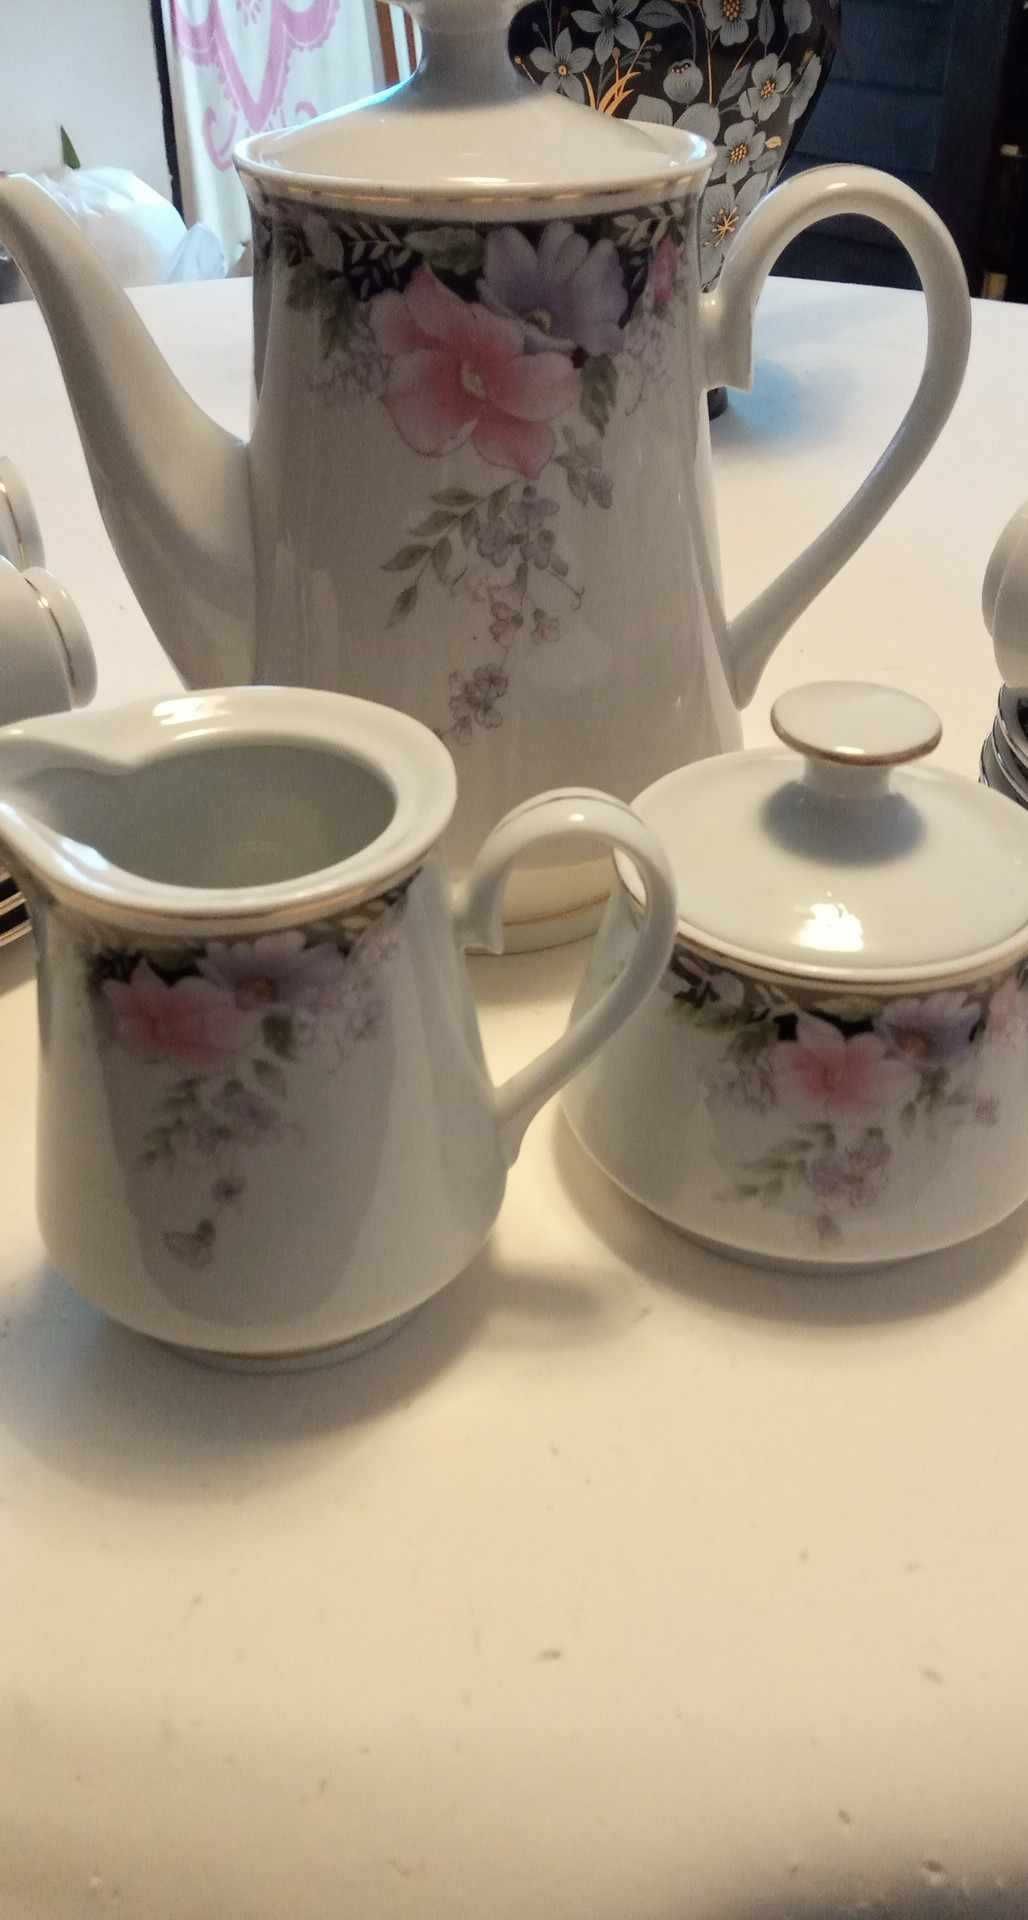 Serviço de porcelana de jantar + café e chá (incompleto)